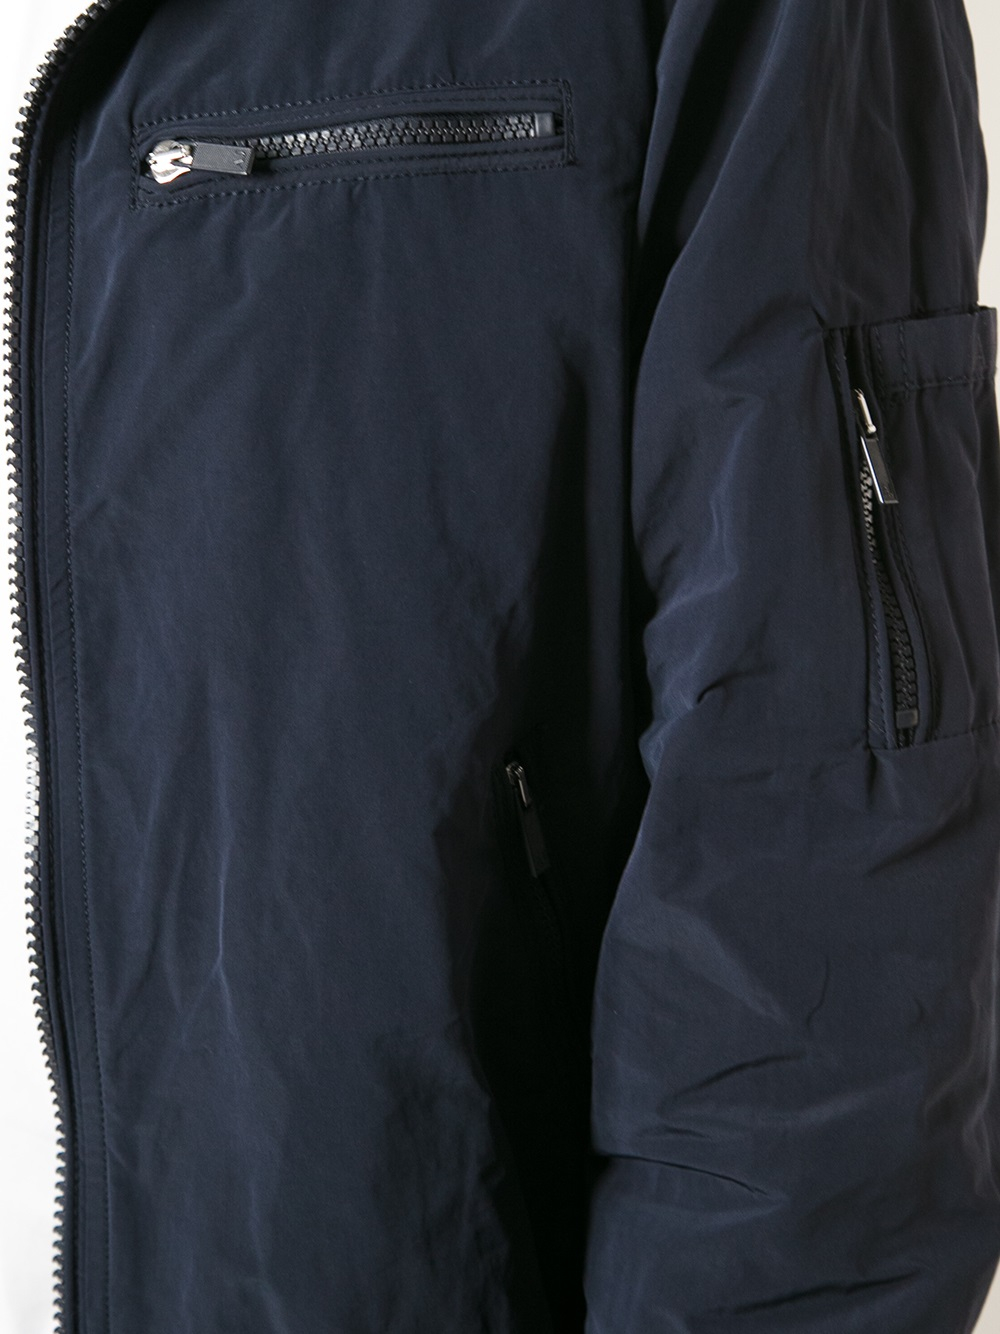 Armani Jeans Blouson Jacket in Blue for Men - Lyst